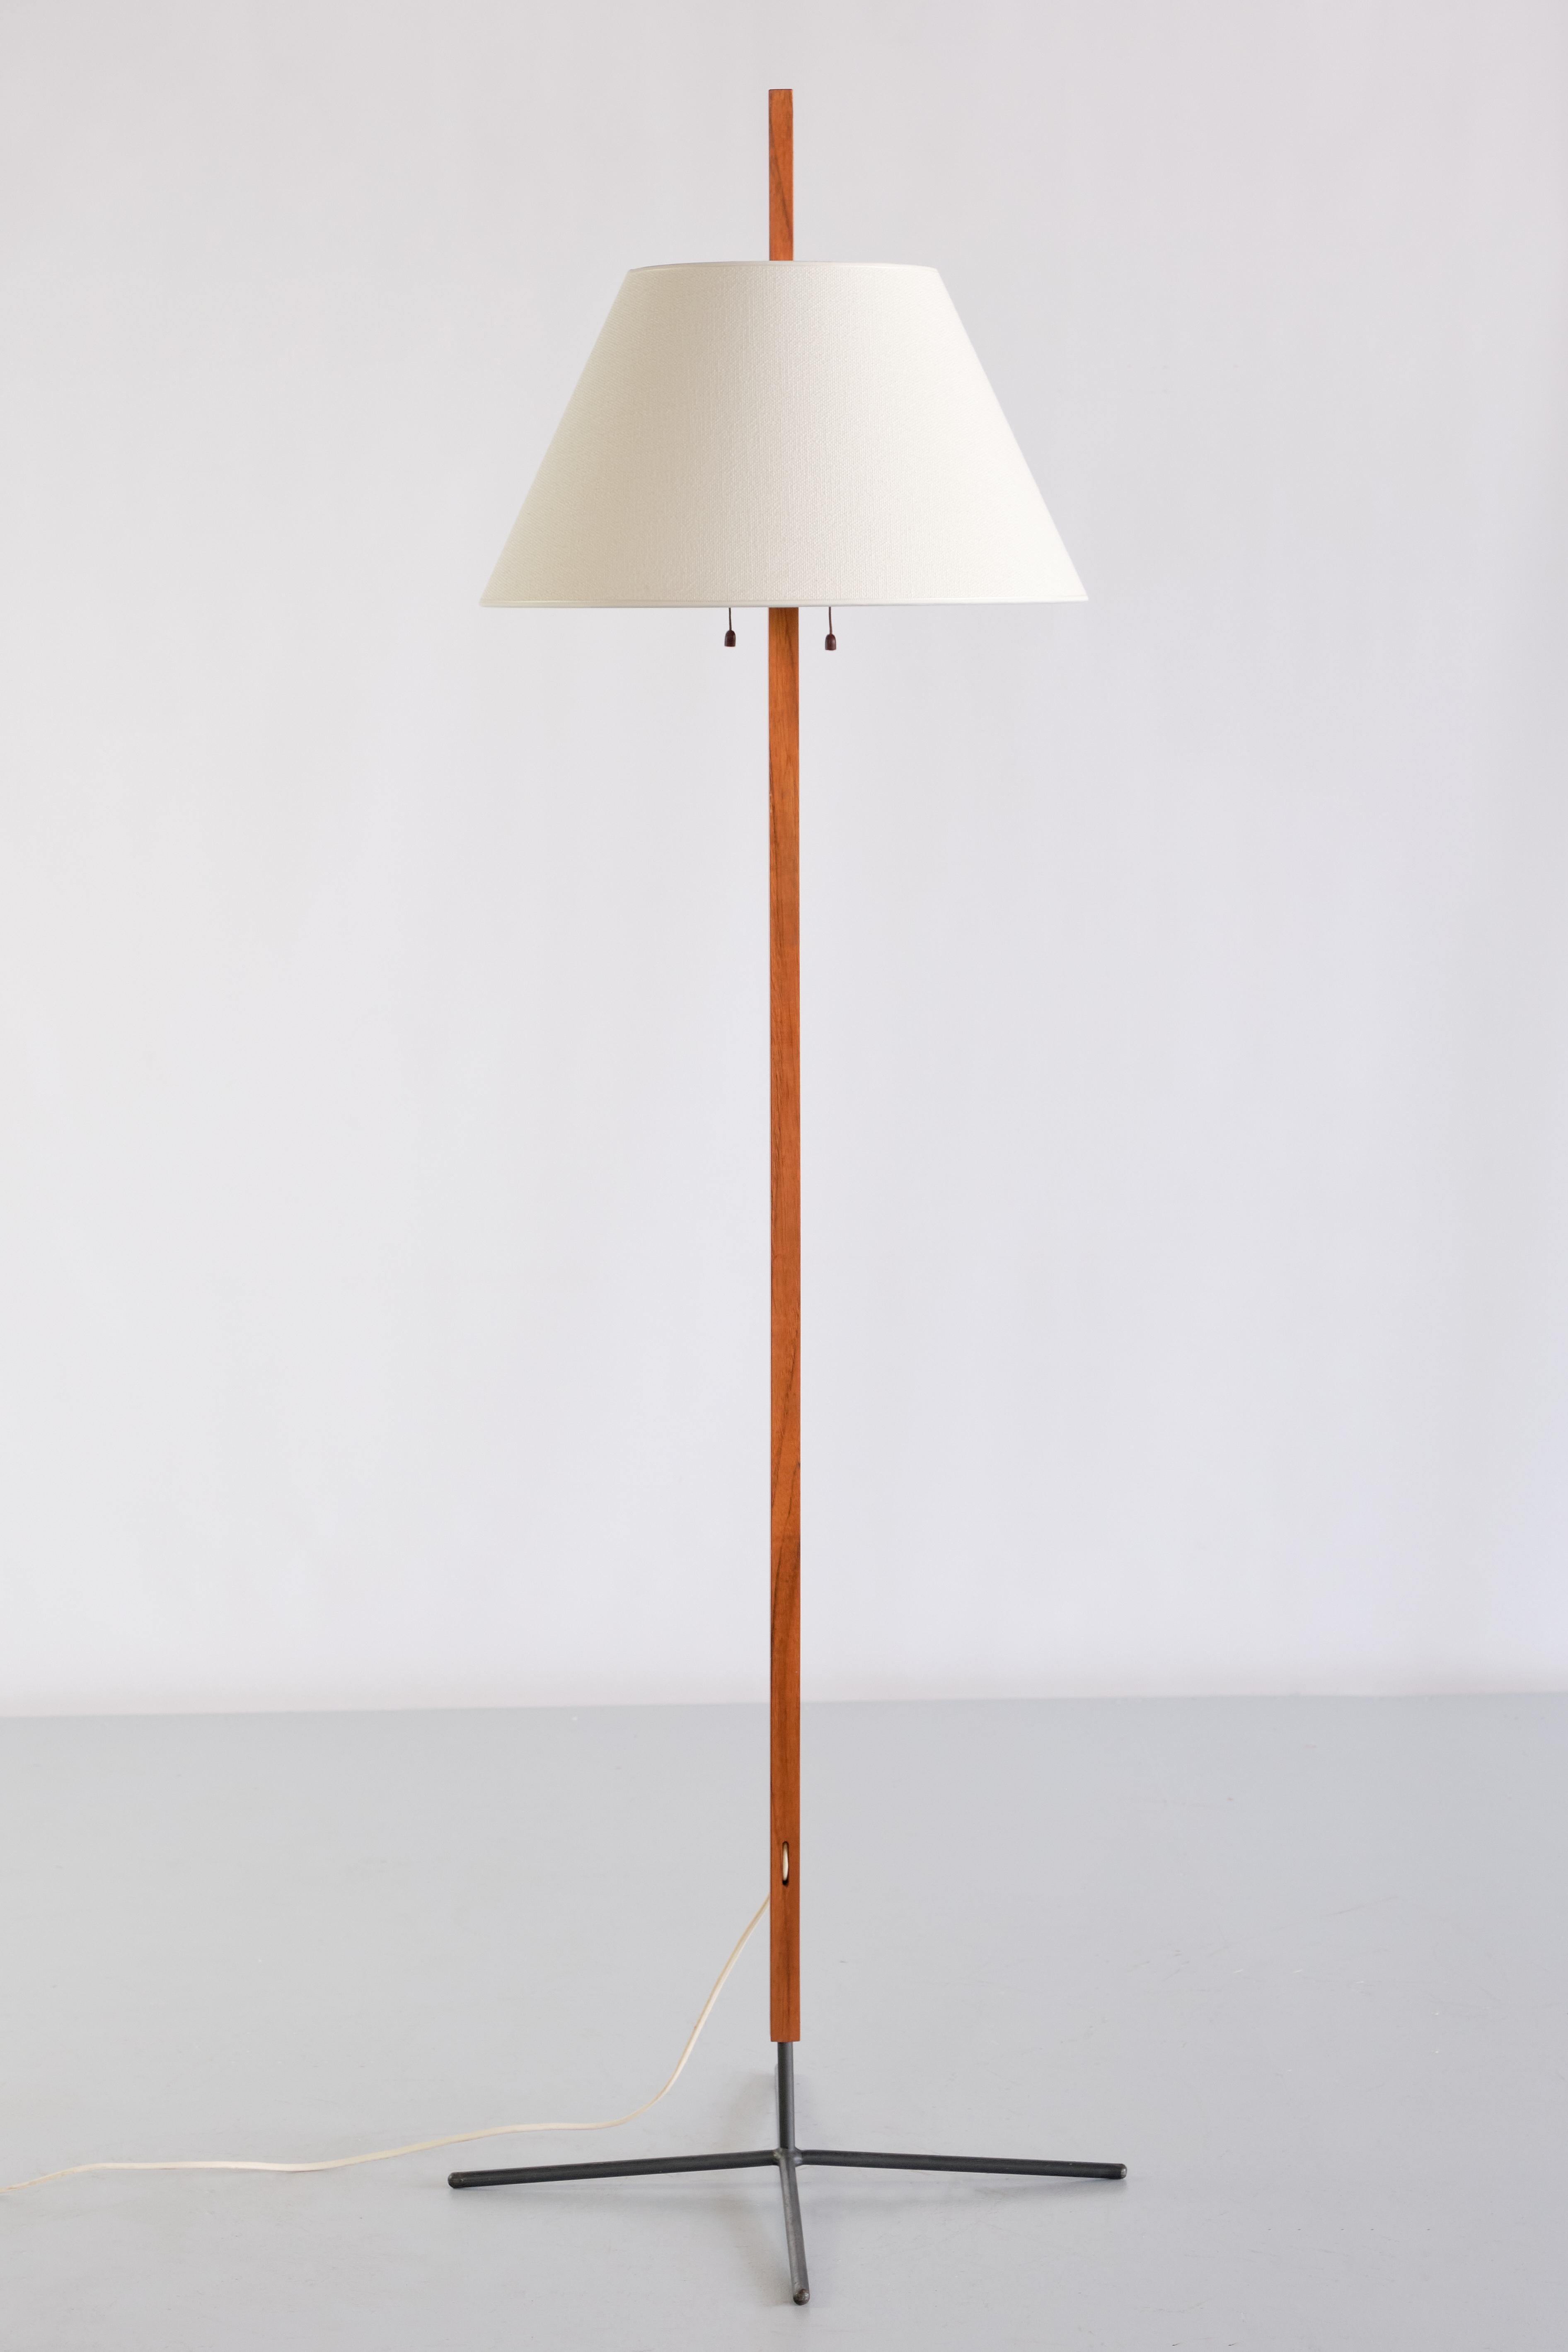 Ce rare lampadaire a été conçu par Hans Agnes Jakobsson et produit par son entreprise à Markaryd, en Suède, au début des années 1960. La lampe porte une plaque du fabricant indiquant le numéro de modèle G35. Le design consiste en une base à pieds